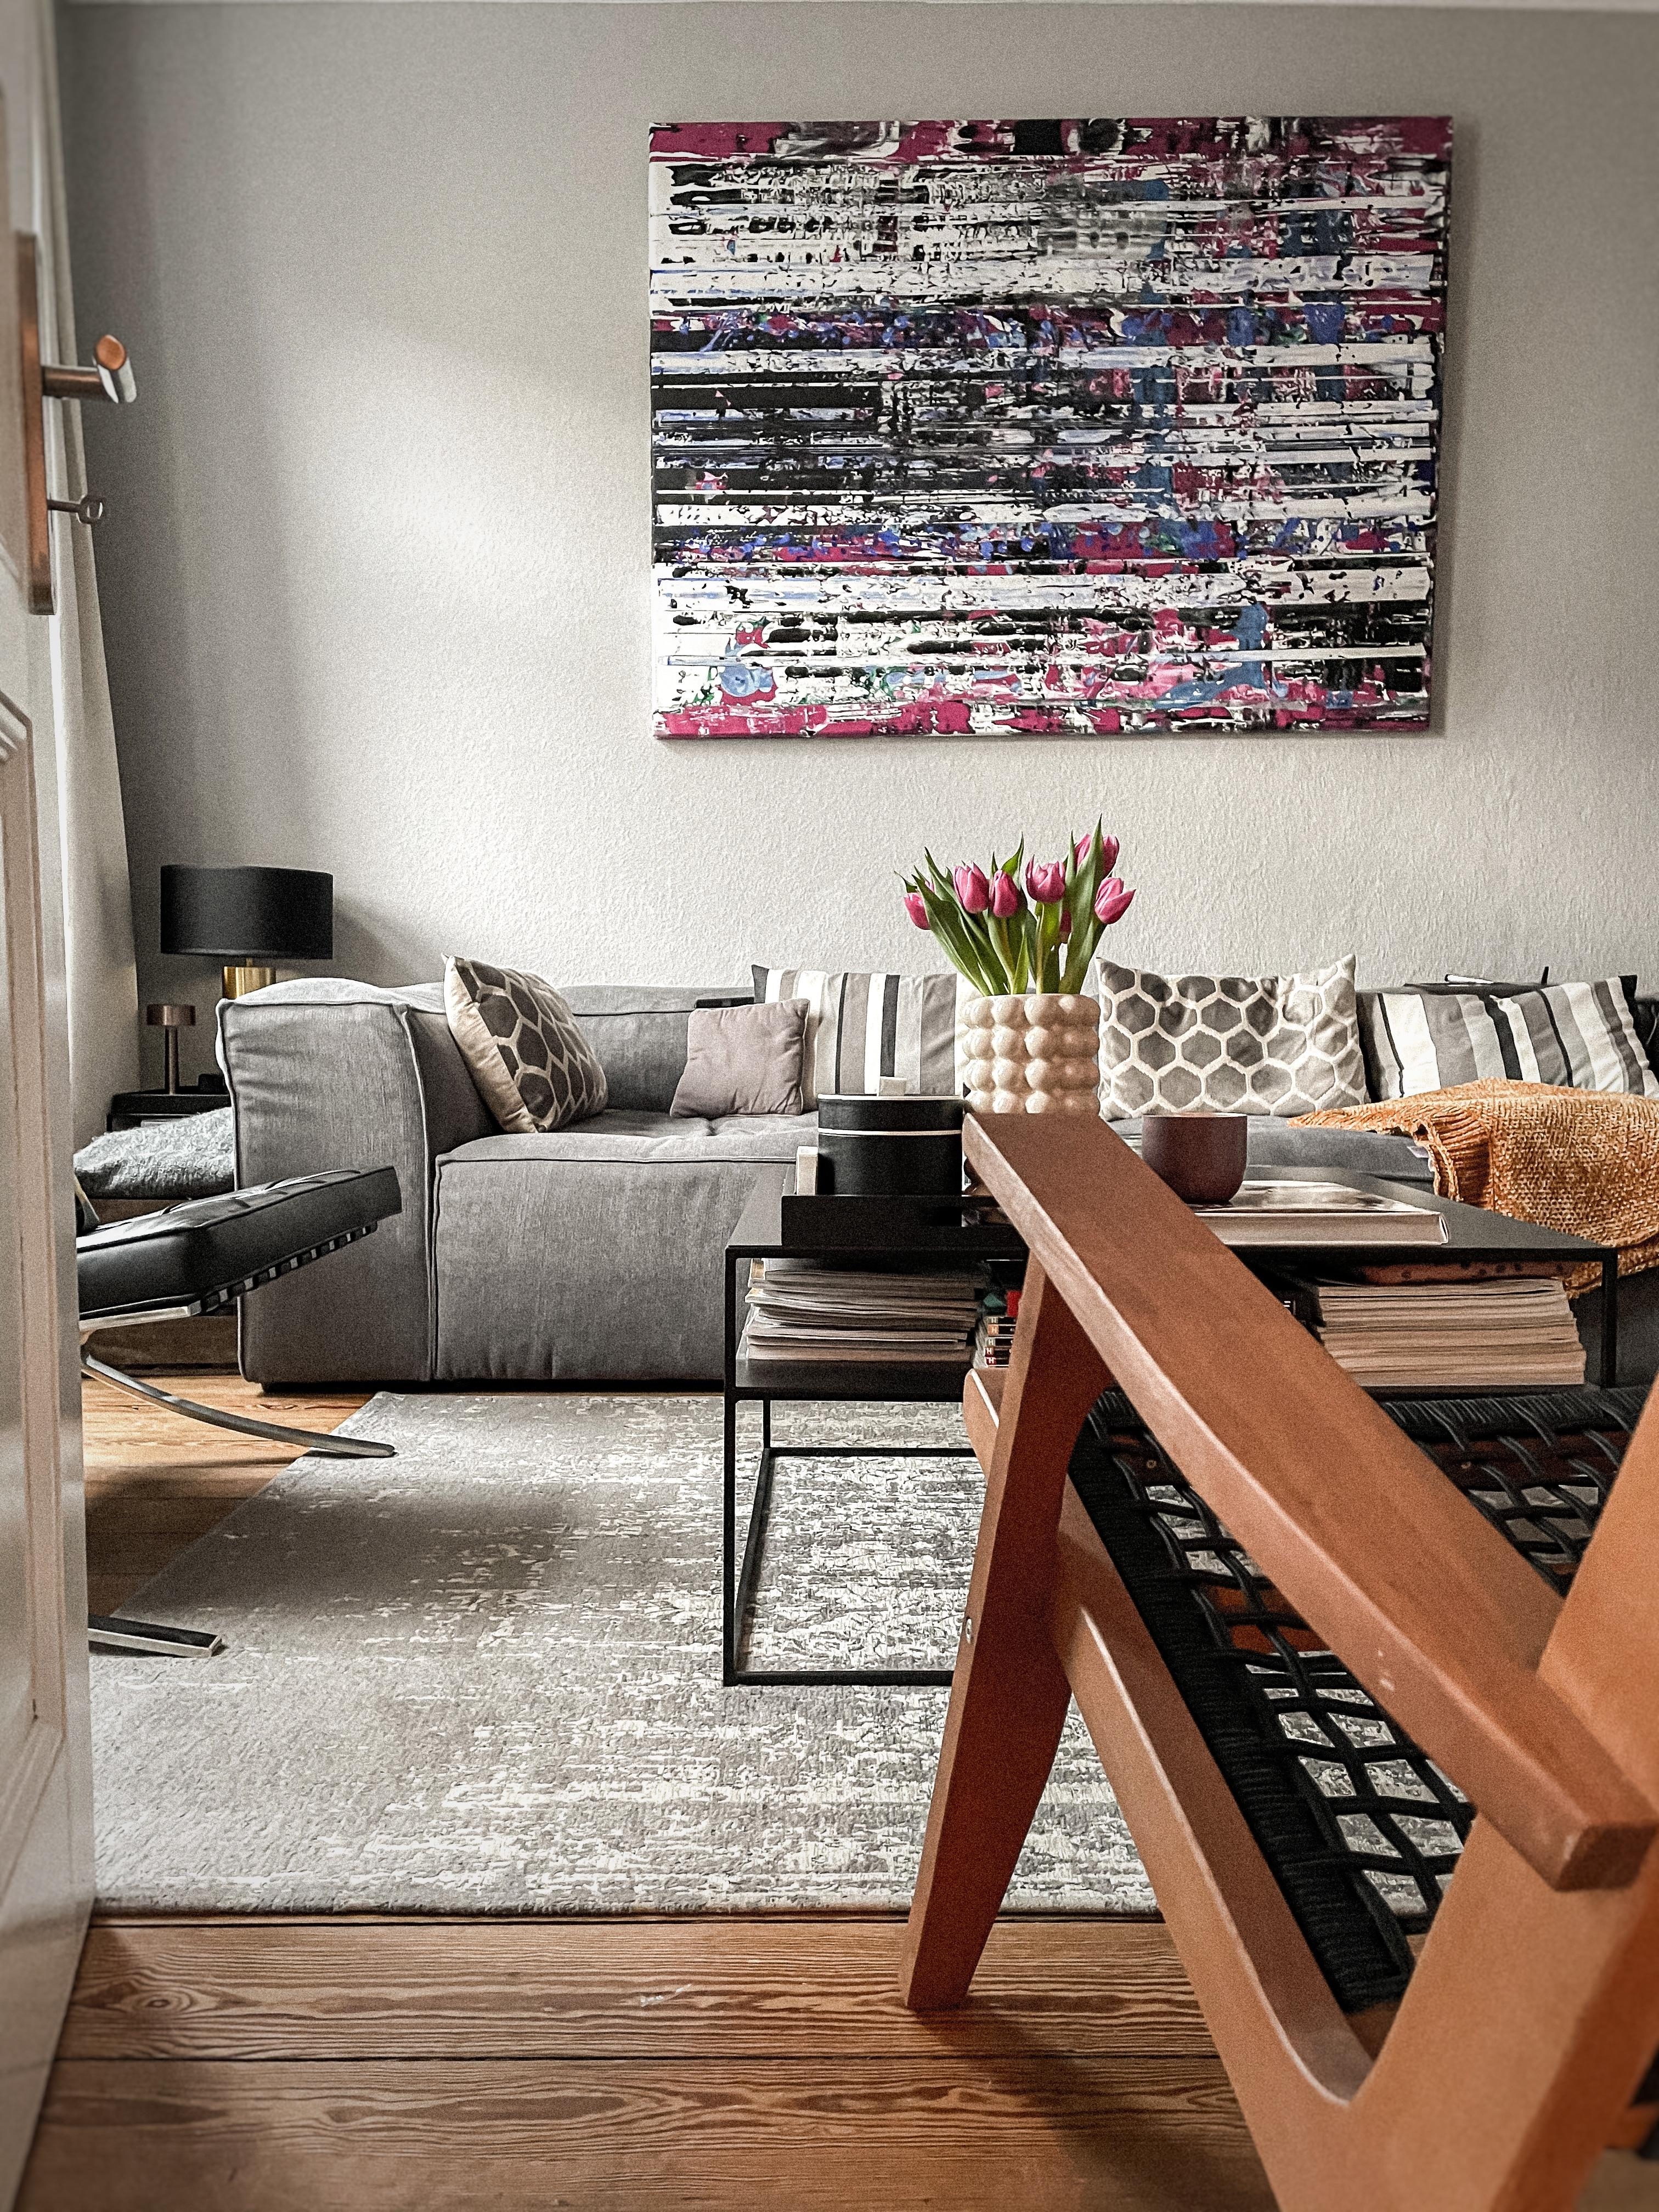 Myhappyview #interior #altbauliebe #design #chair #couch #couchstyle #blumen #design #kunst